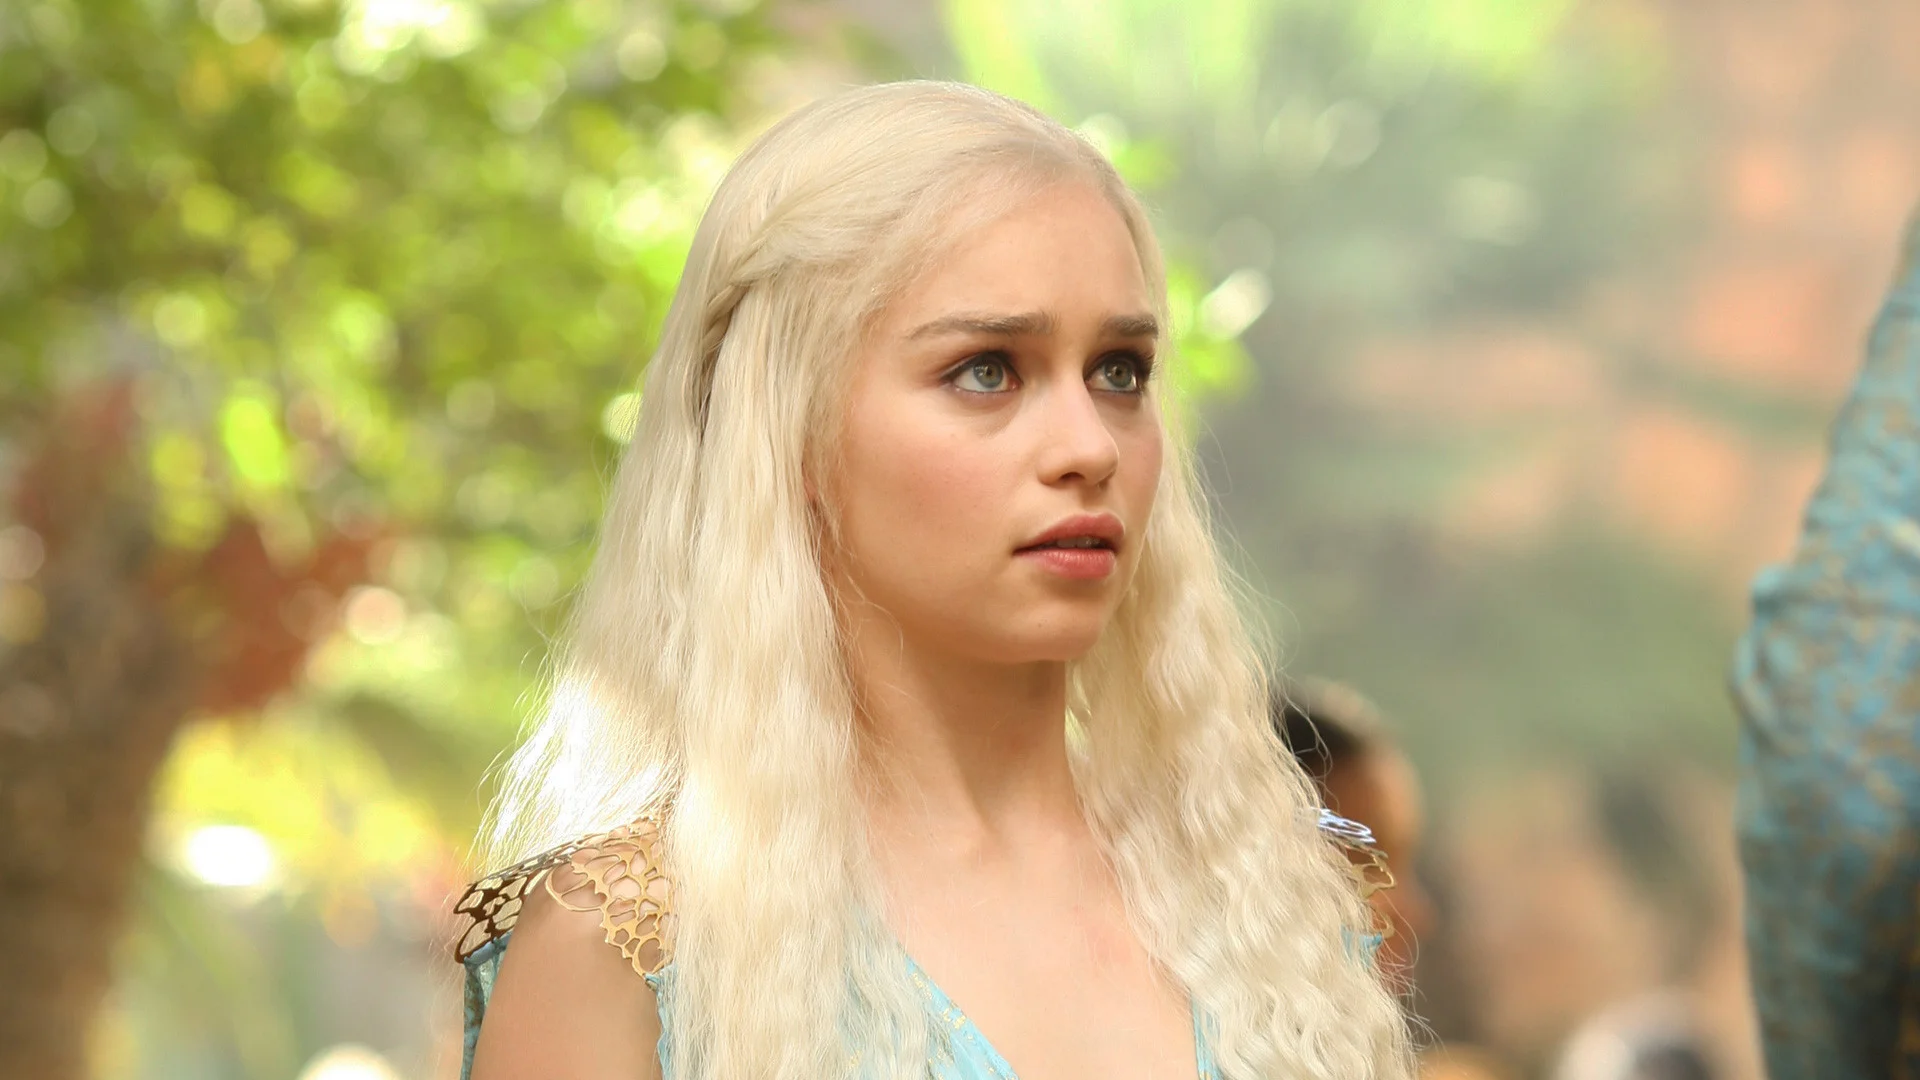 3840x2160 Resolution Emilia Clarke as Daenerys Targaryen in GOT 8 4K  Wallpaper - Wallpapers Den